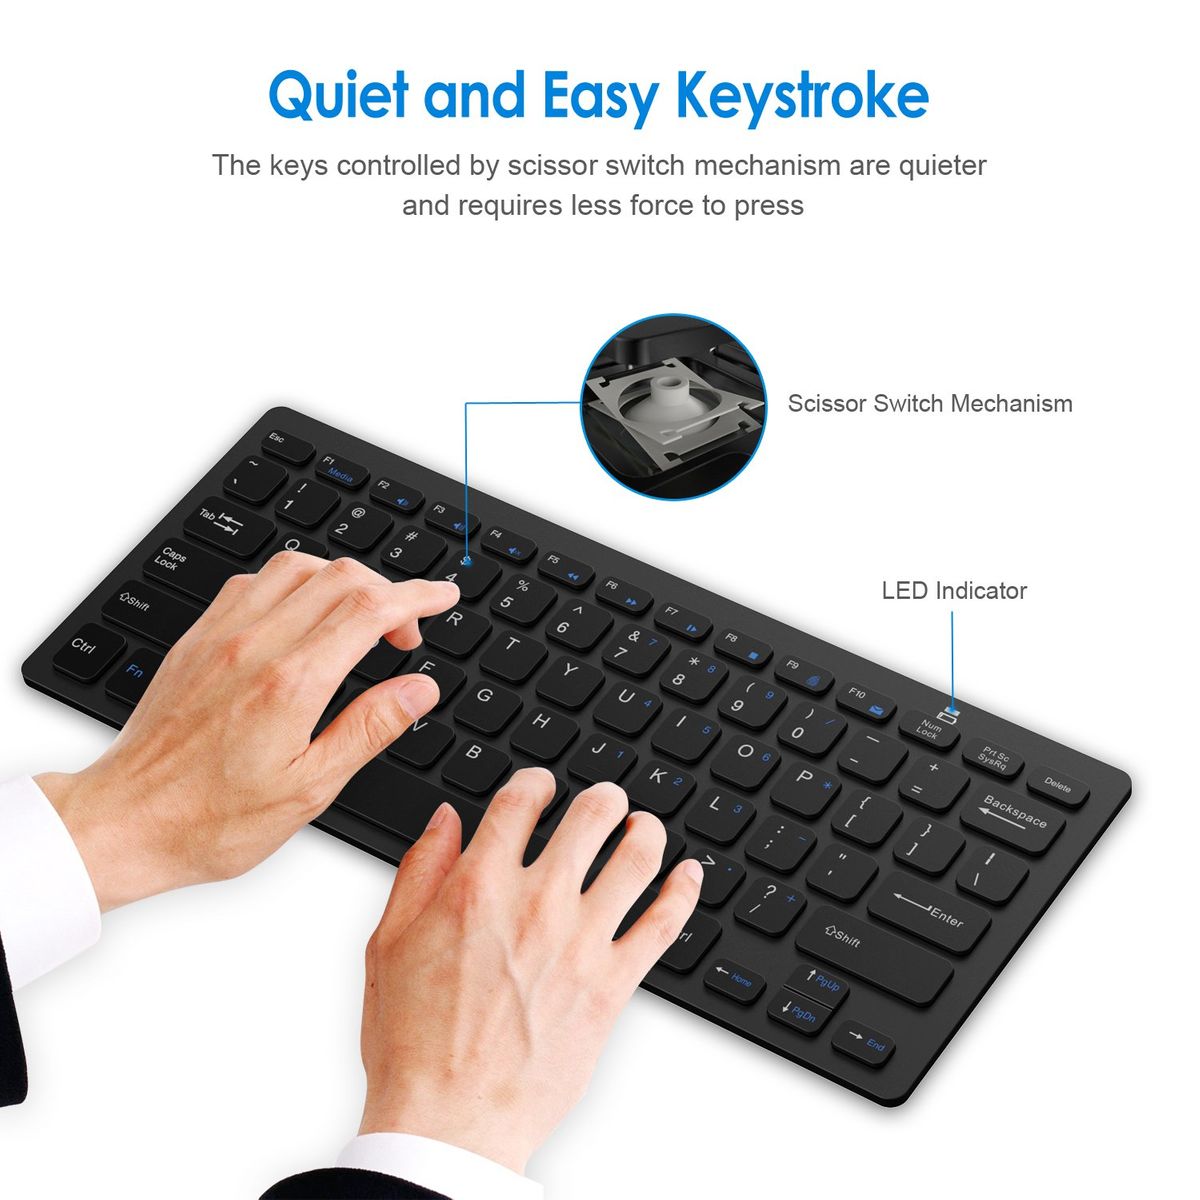 JETech 2160-KB-WIRELESS-BK Tastatur Bluetooth Schwarz US-Layout